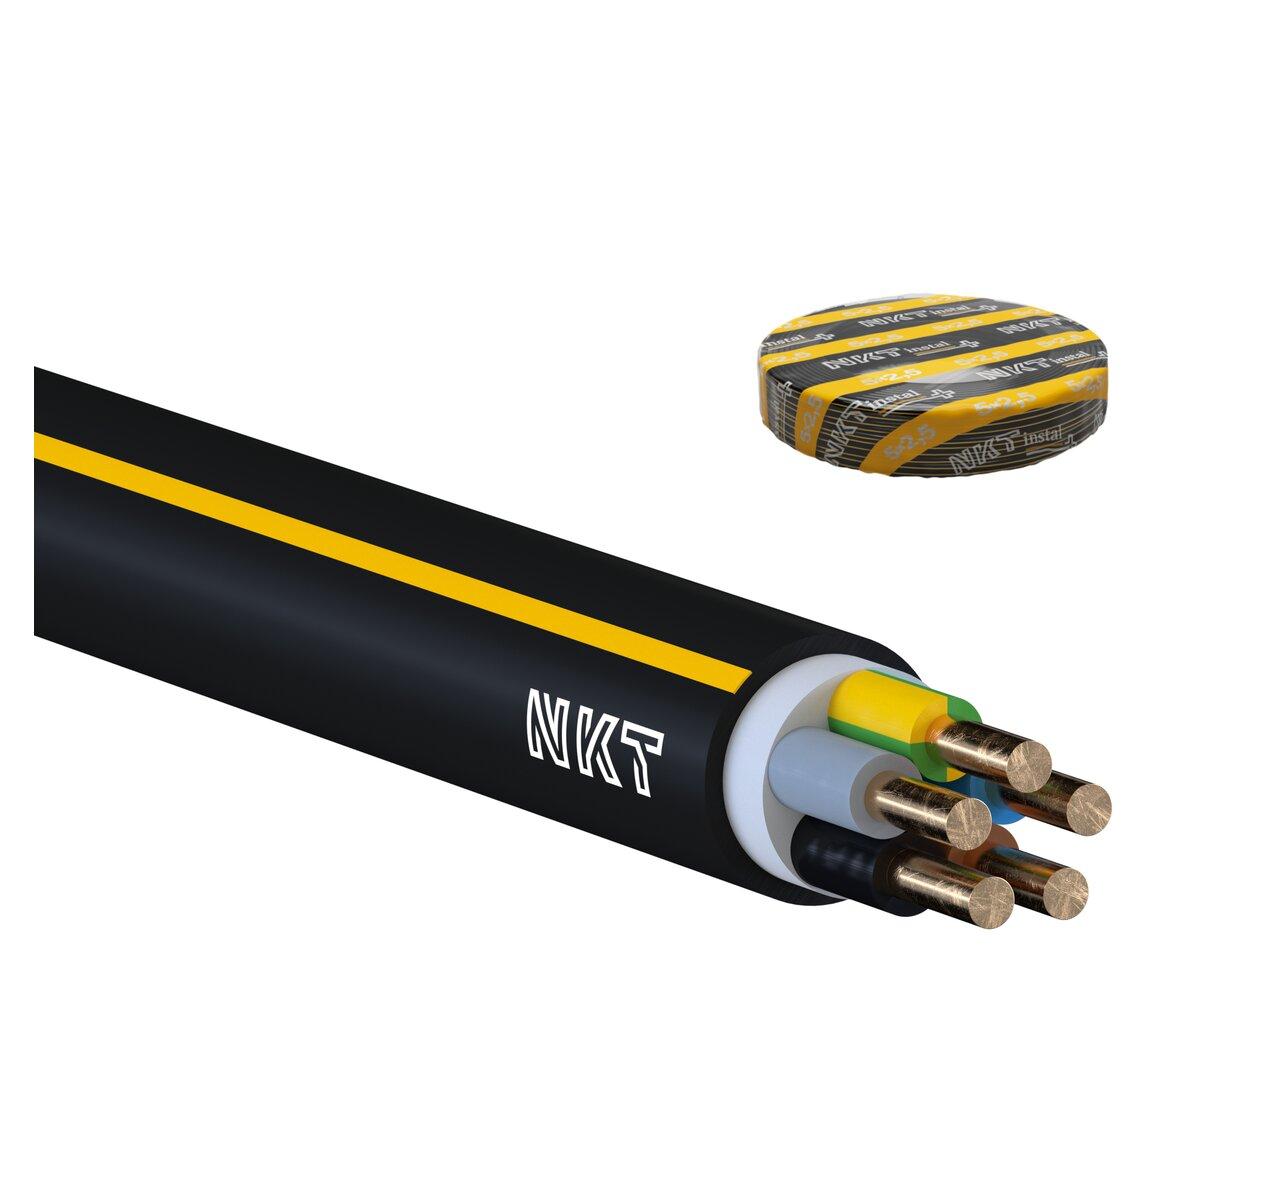 Kábel CYKY-J 5x2,5 mm2 Instal PLUS v kruhoch 100m (so žltým pruhom)             